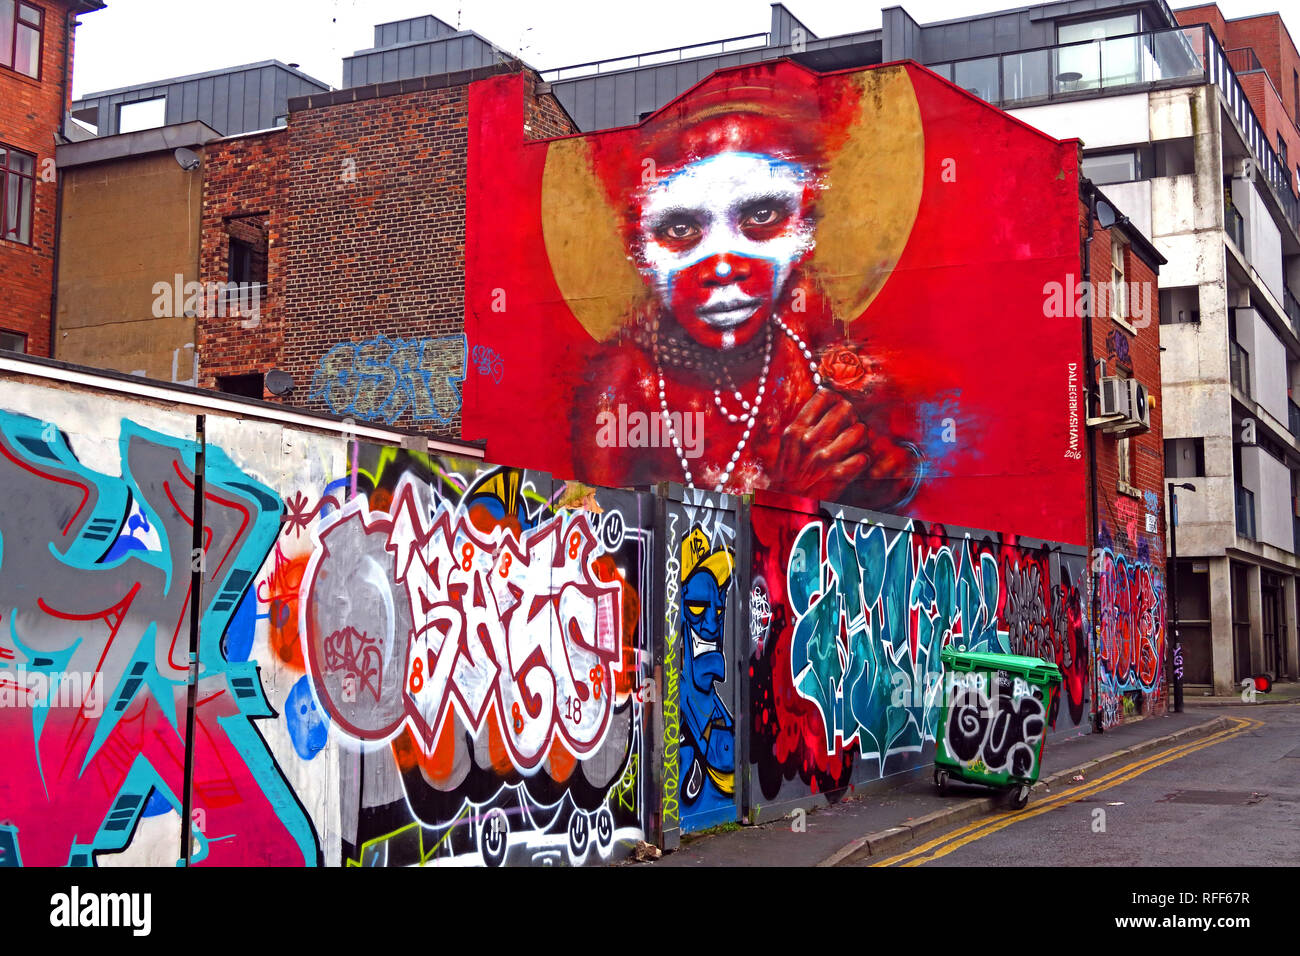 Face autochtones sur fond rouge de graffiti, Spear, quart nord St, Manchester, Angleterre, RU Banque D'Images